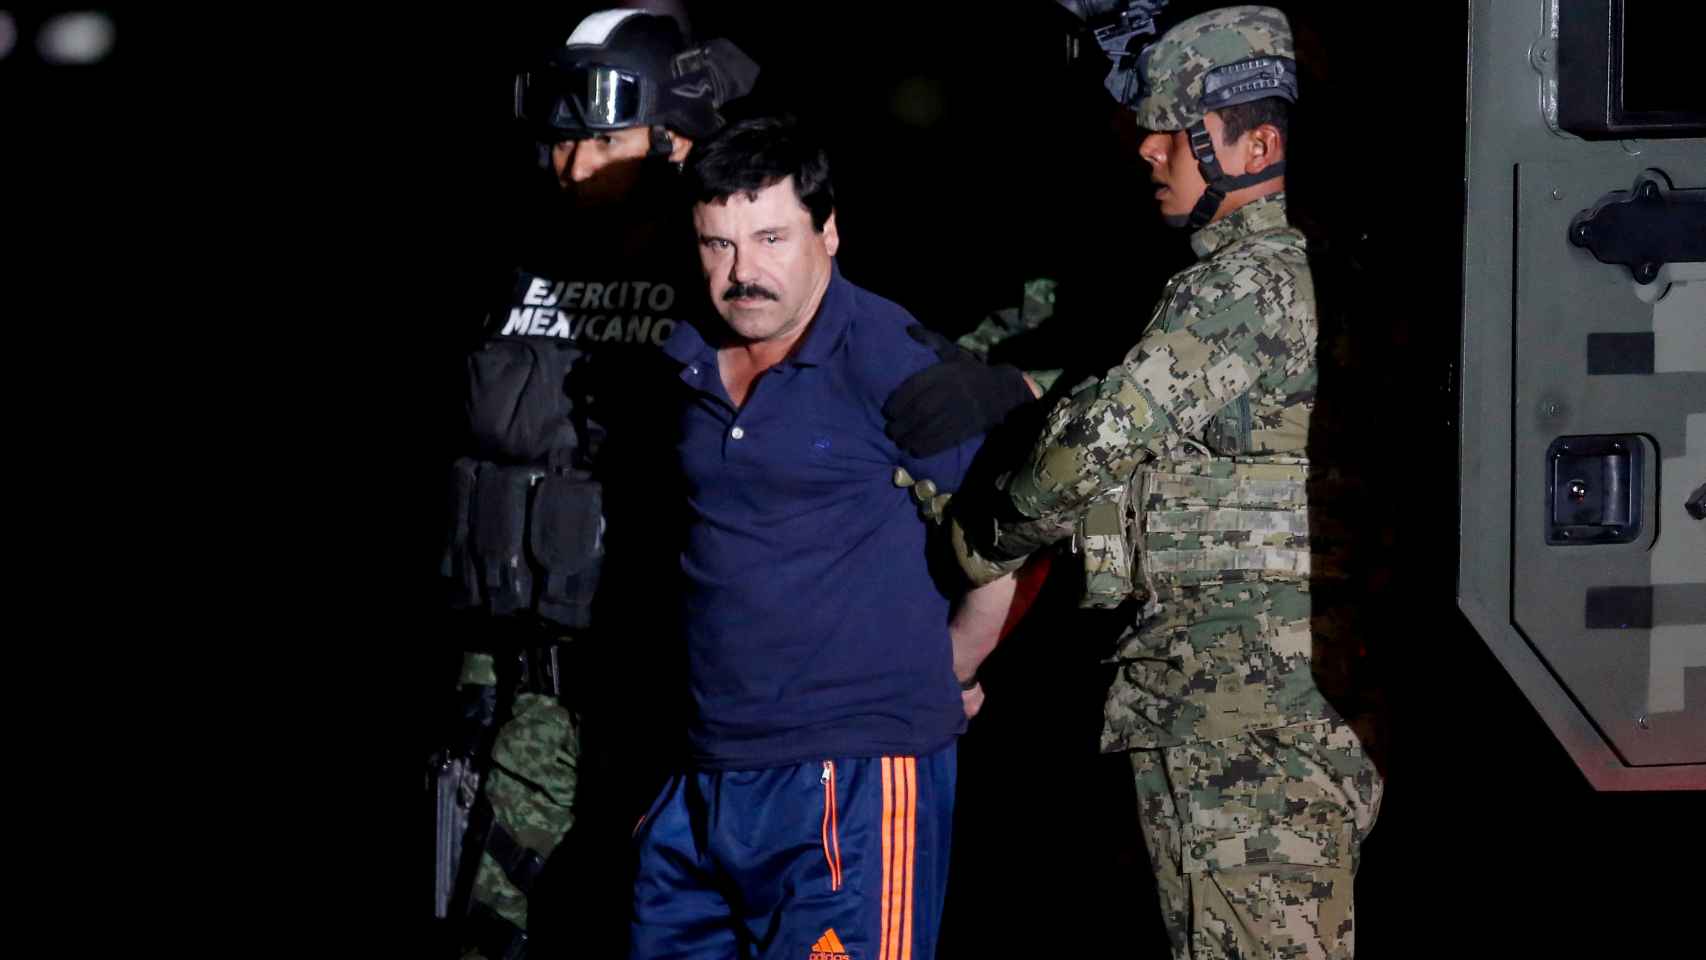 El Chapo escoltado por soldados en Ciudad de México en 2016